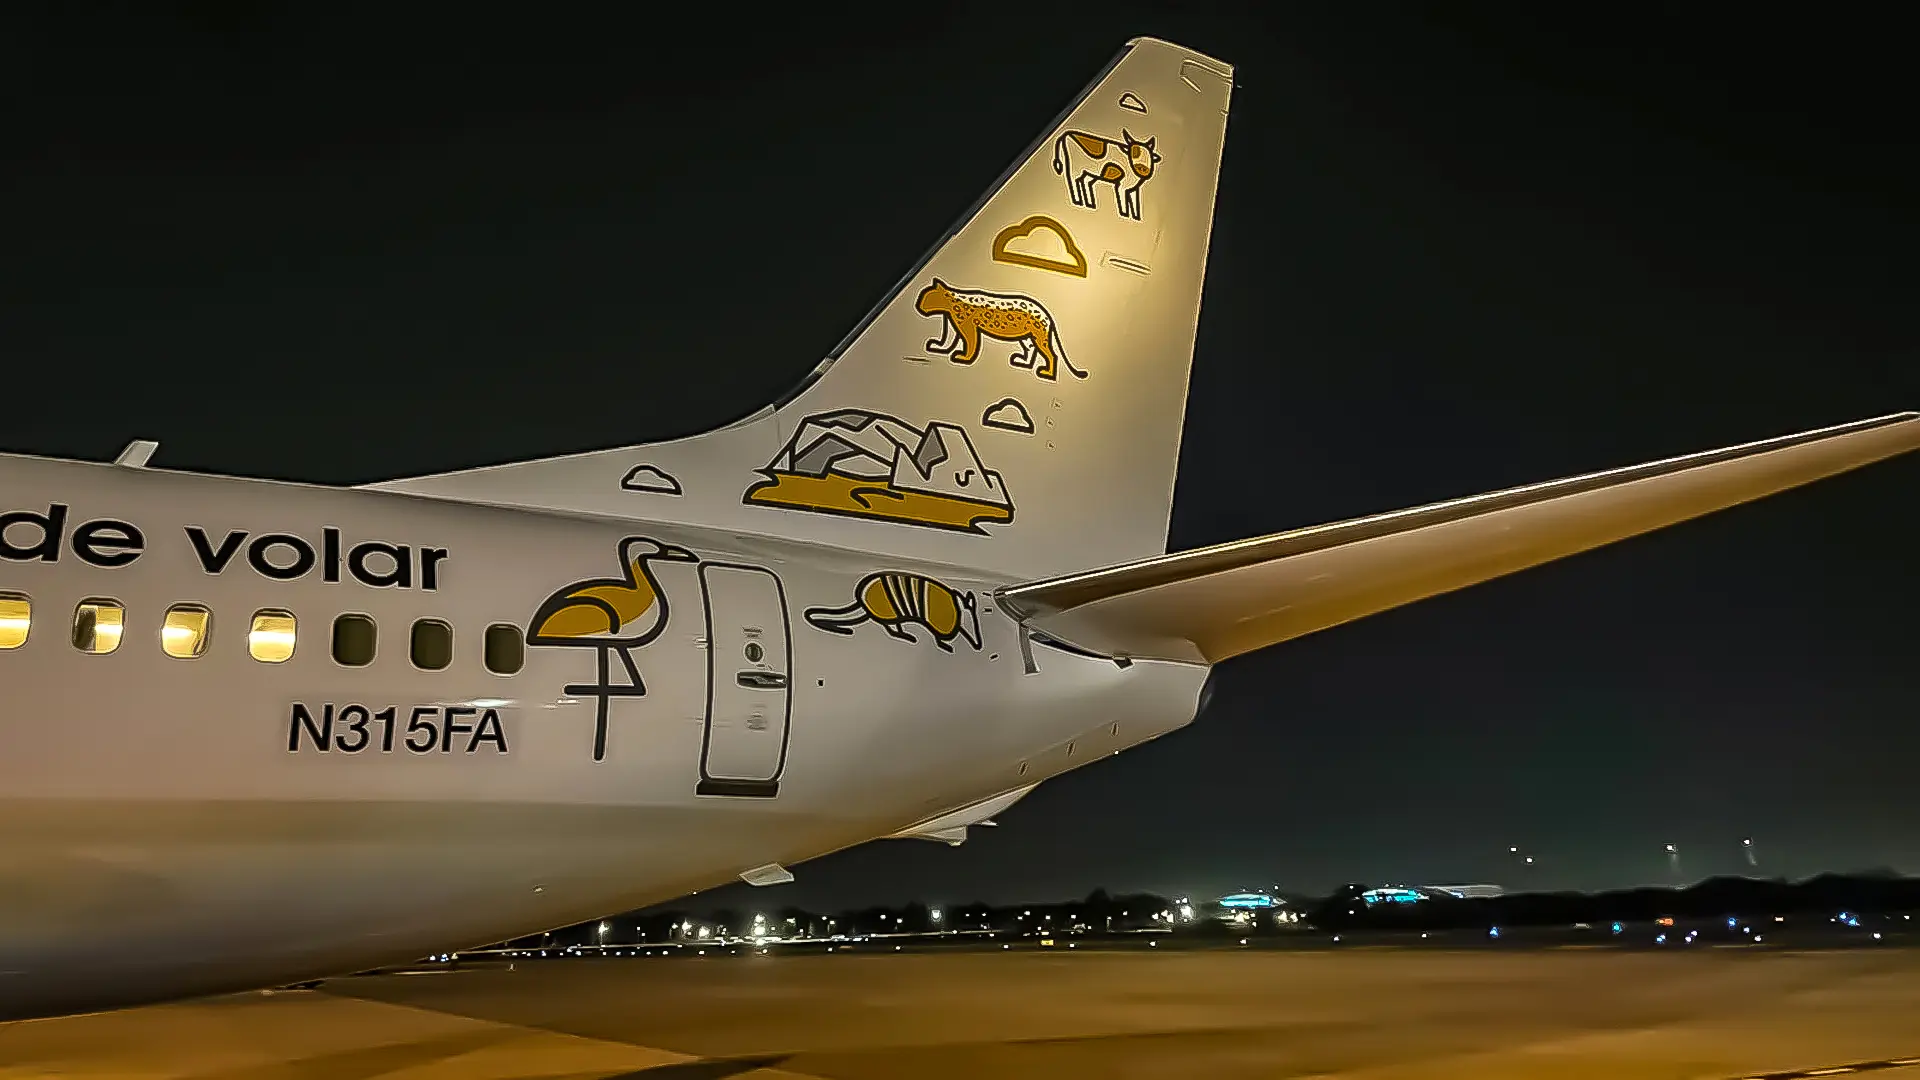 La aerolínea Flybondi sumó un octavo avión a su flota en Argentina